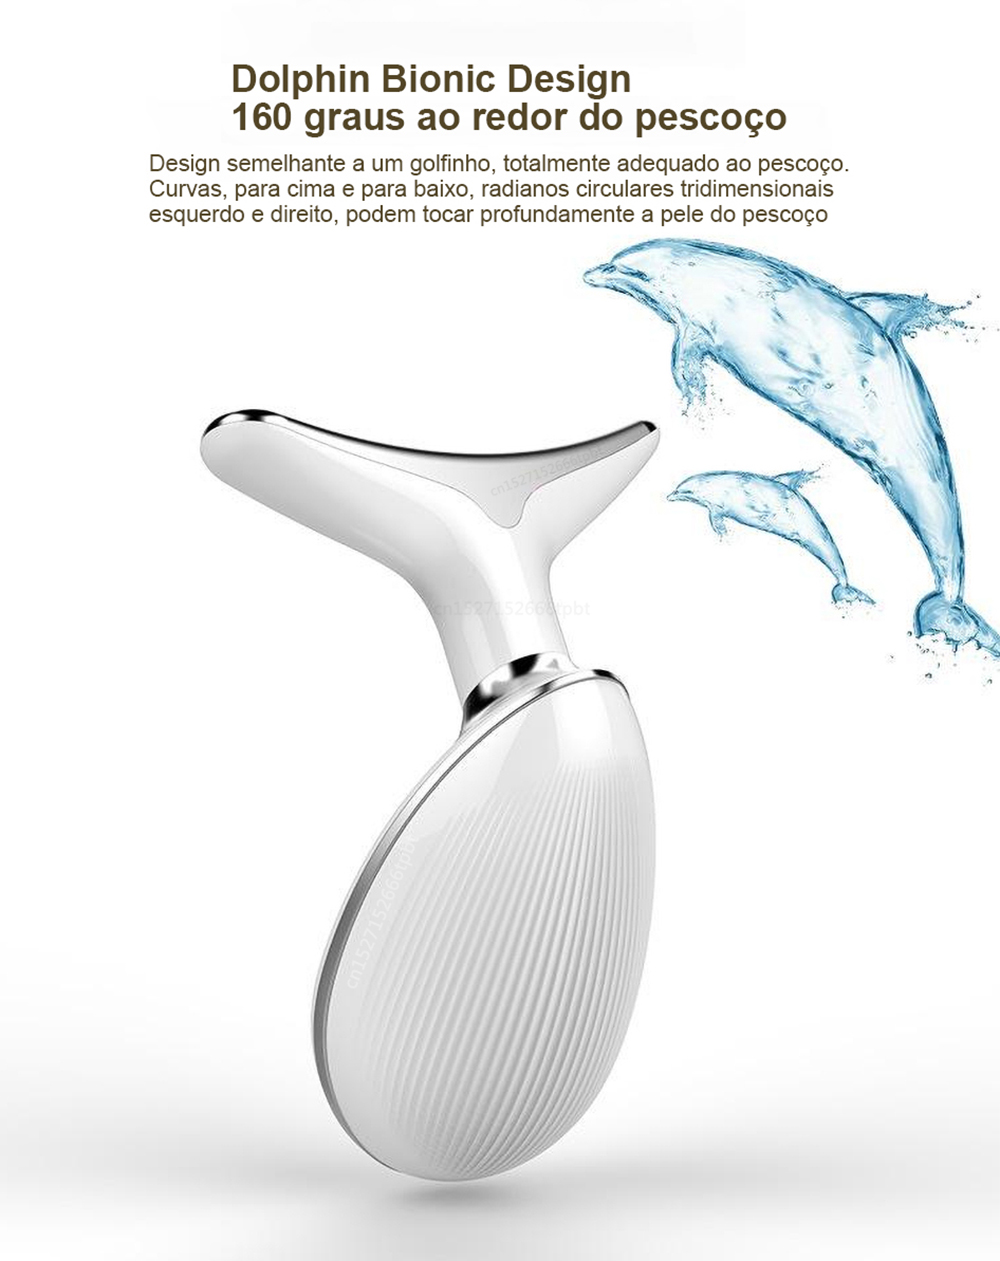 Dolphin Bionic Design
160 Graus ao Redor do Pescoço  Design semelhante a um golfinho, totalmente adequado ao pescoço.
Curvas, para cima e para baixo, radianos circulares tridimensionais esquerdo e direito, podem tocar profundamente